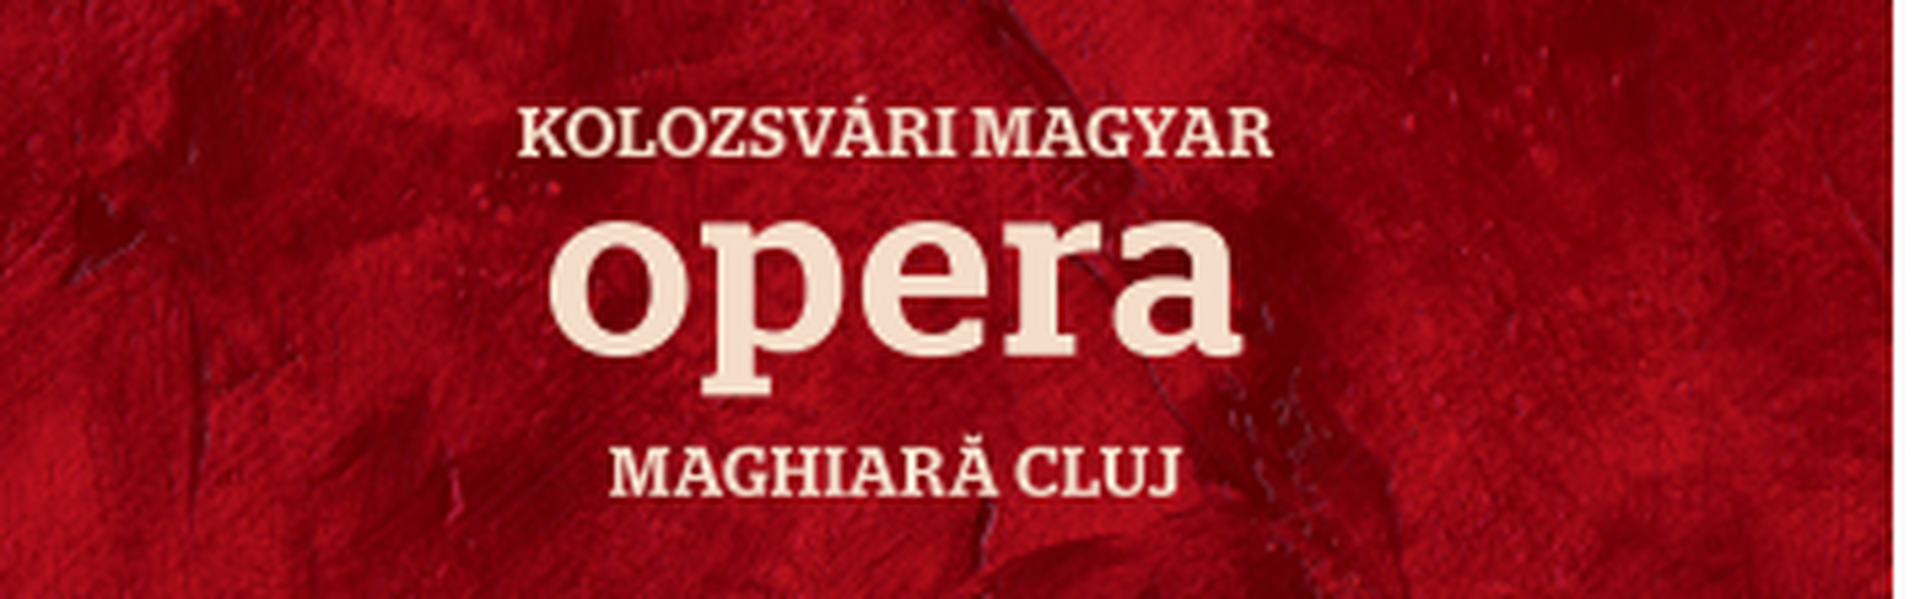 opera_logó_évad